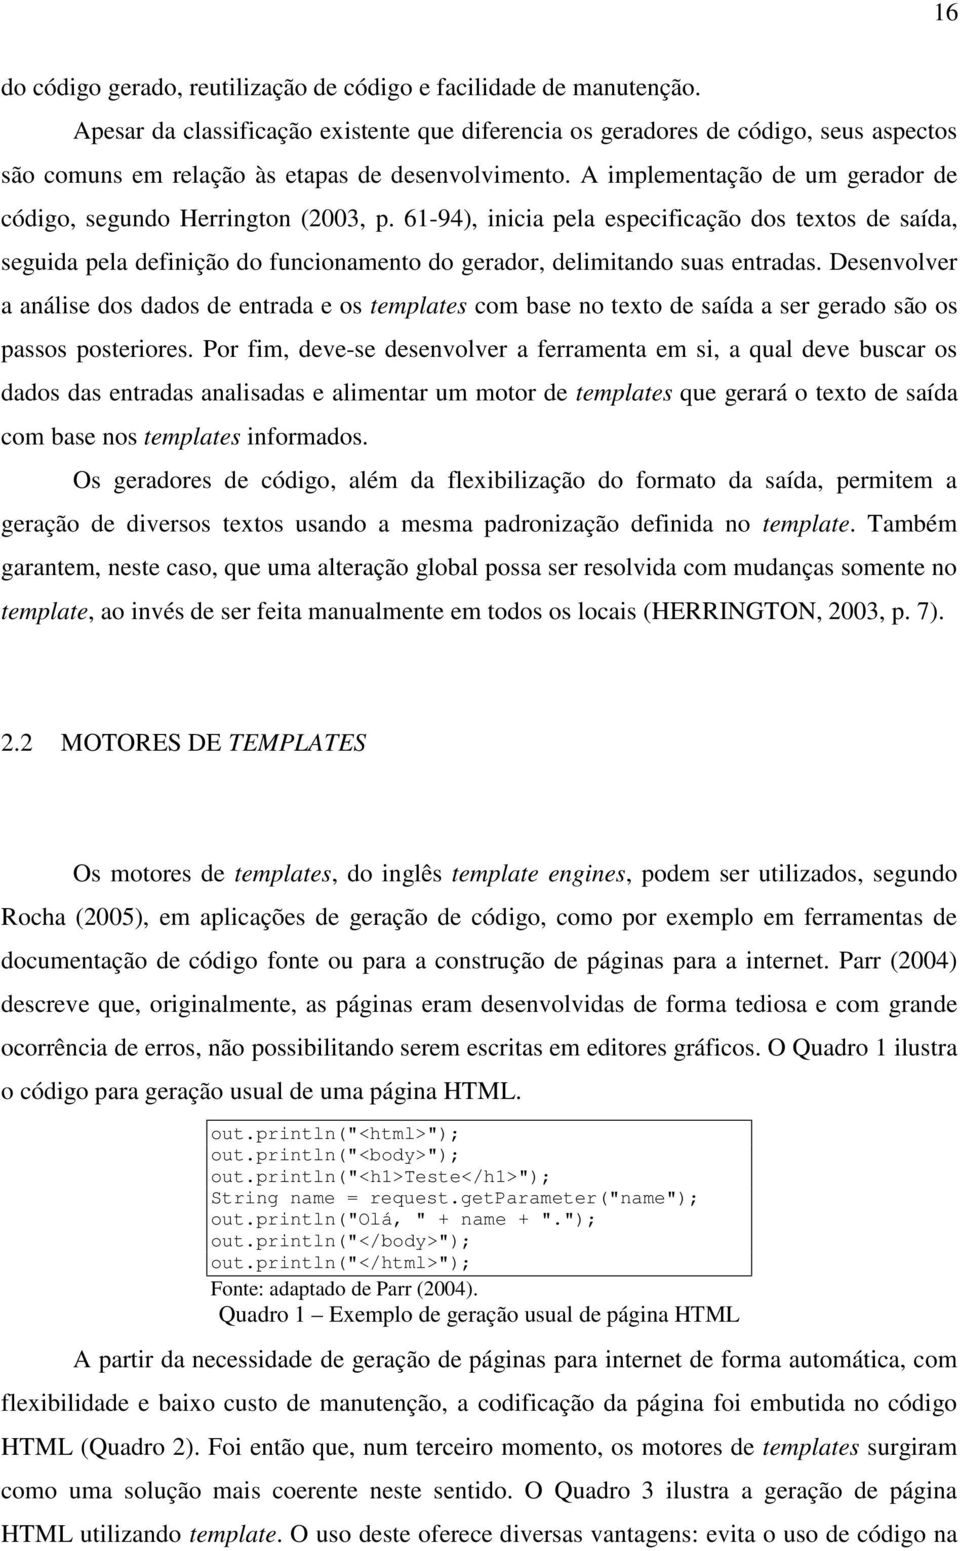 A implementação de um gerador de código, segundo Herrington (2003, p.